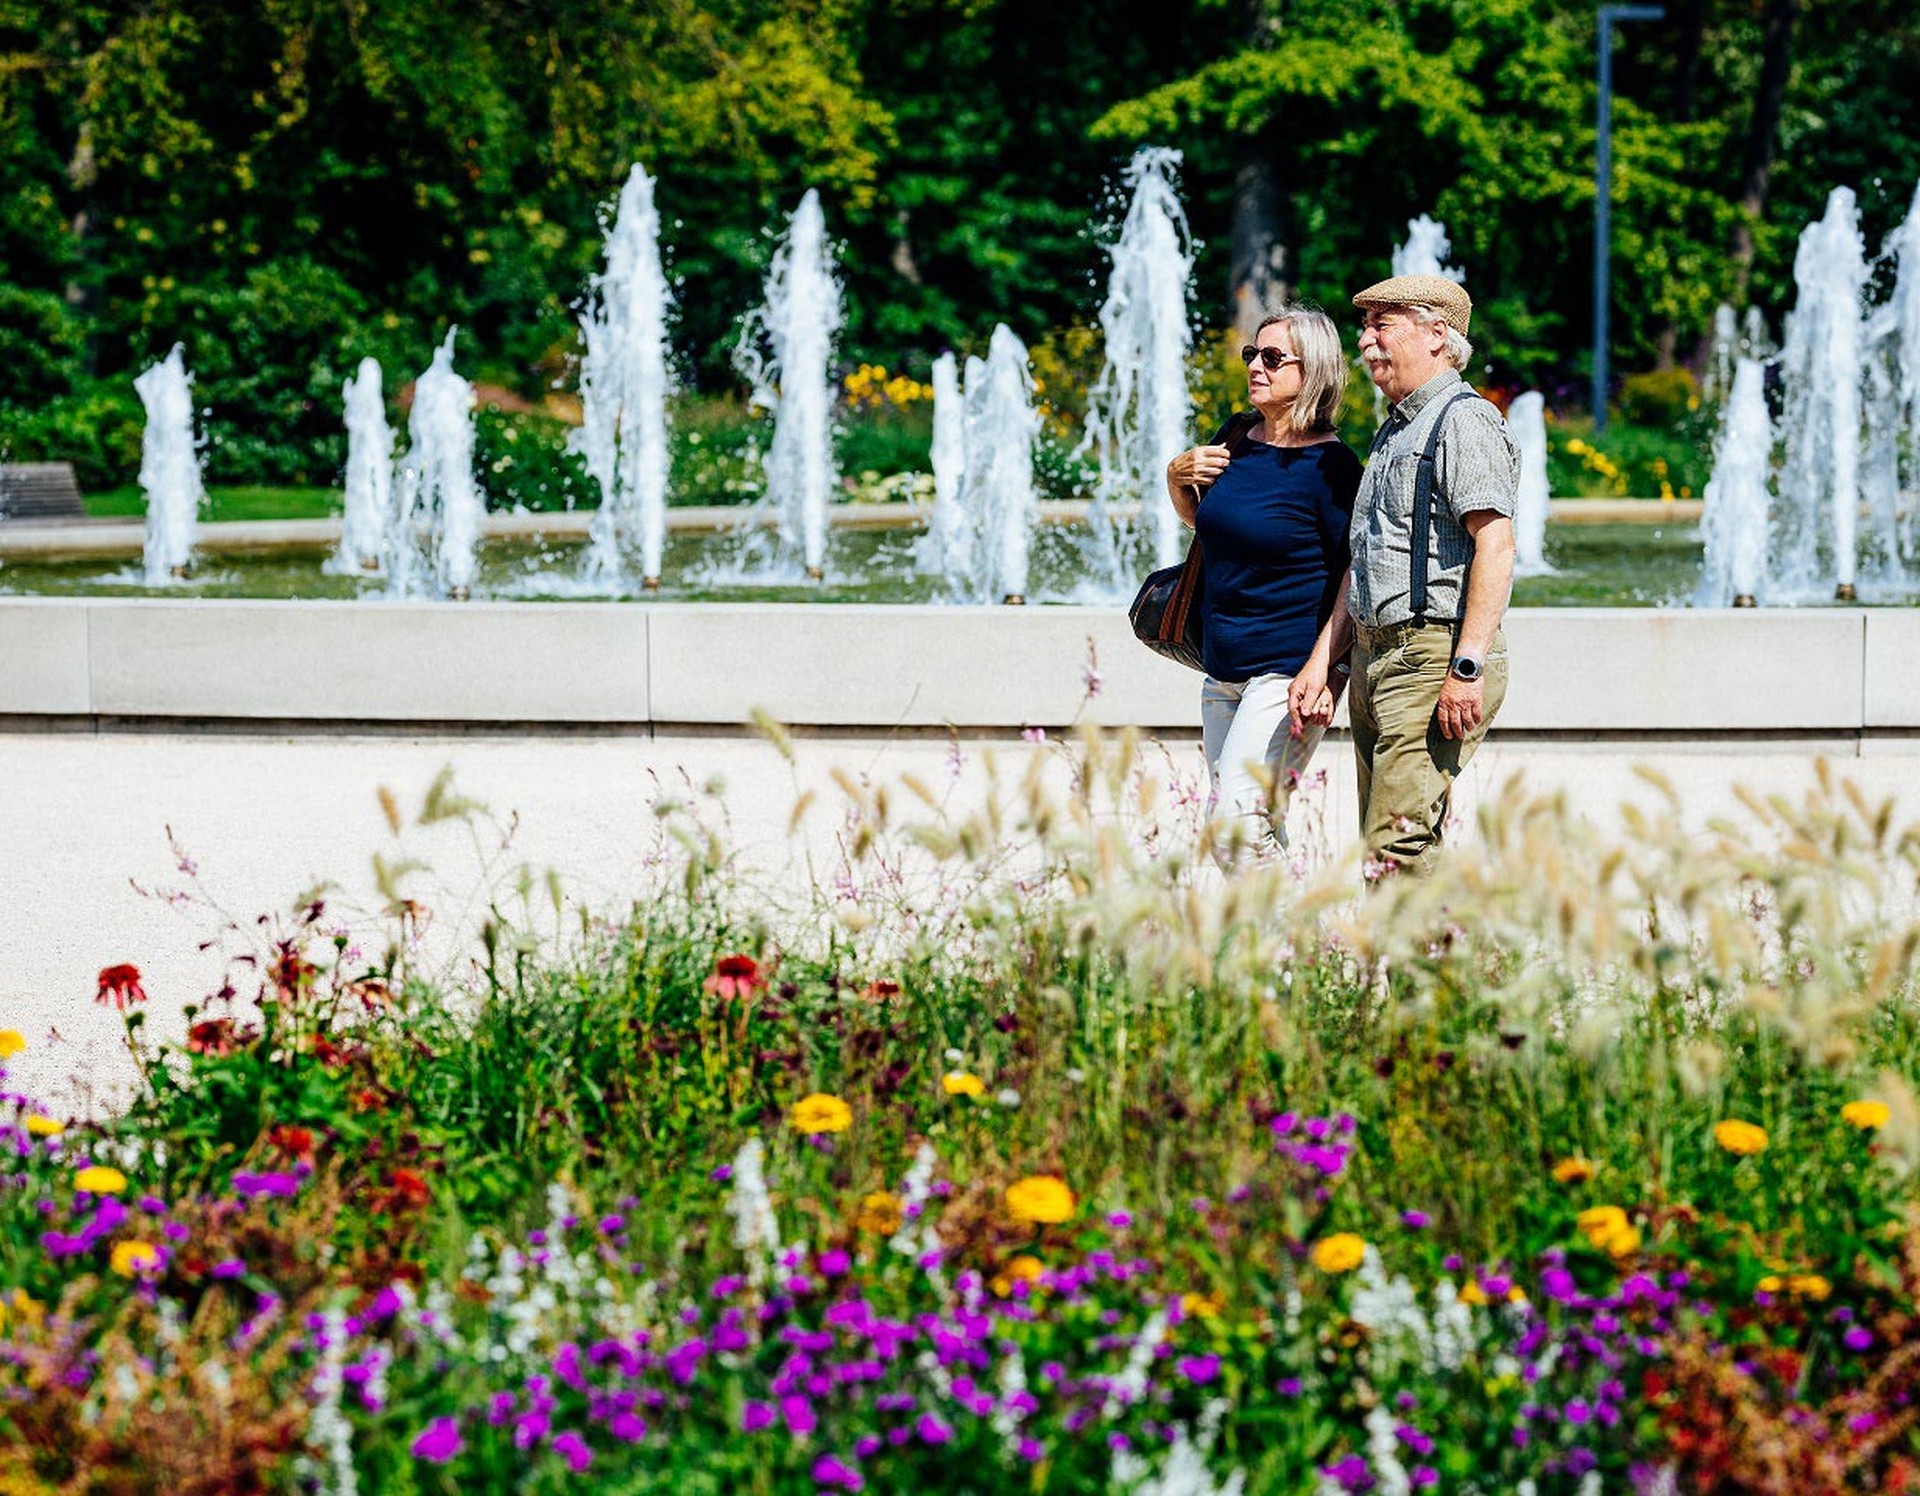 Ein älteres Paar steht vor der NIEWELS-Fontäne. Sie wurde der Landesgartenschau Bad Lippspringe geschenkt und empfängt die Gäste im Park.